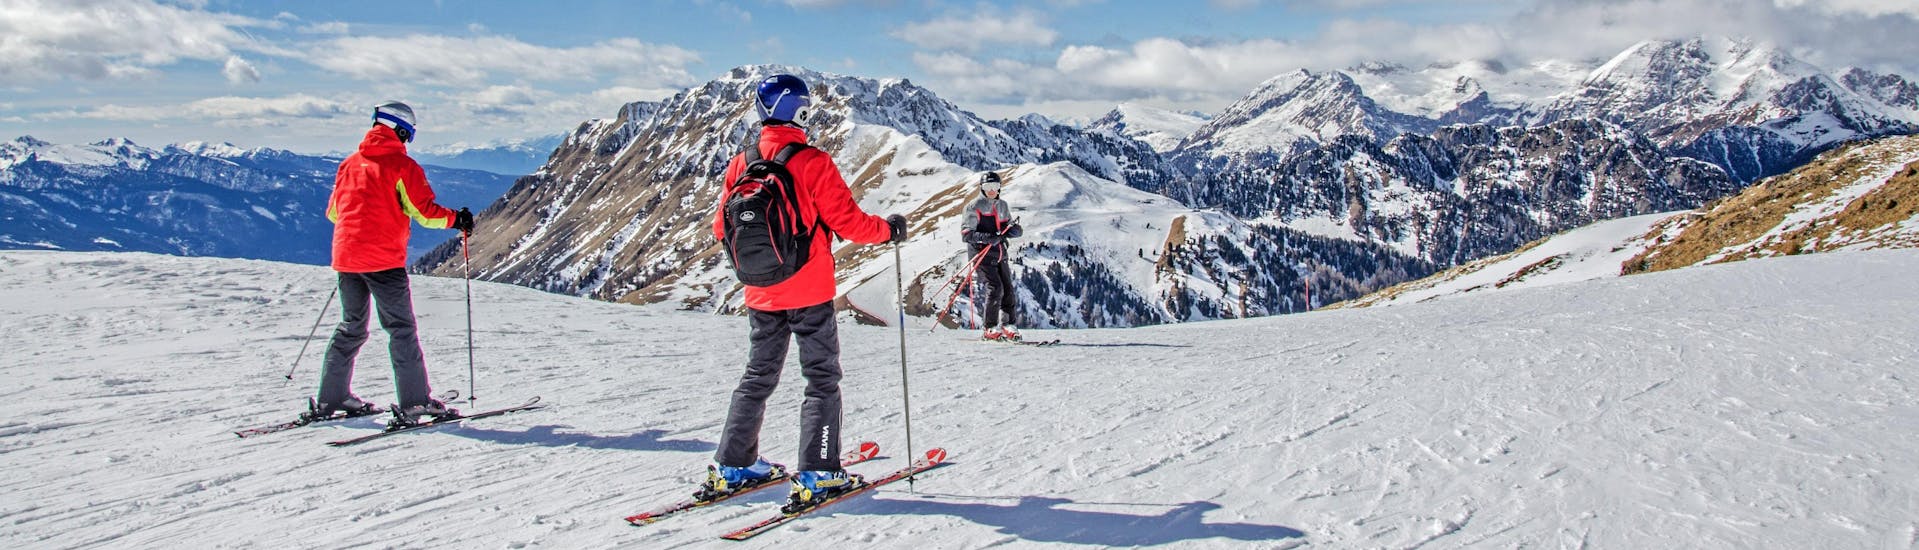 Sciatori in cima alle montagne che dominano la stazione sciistica.